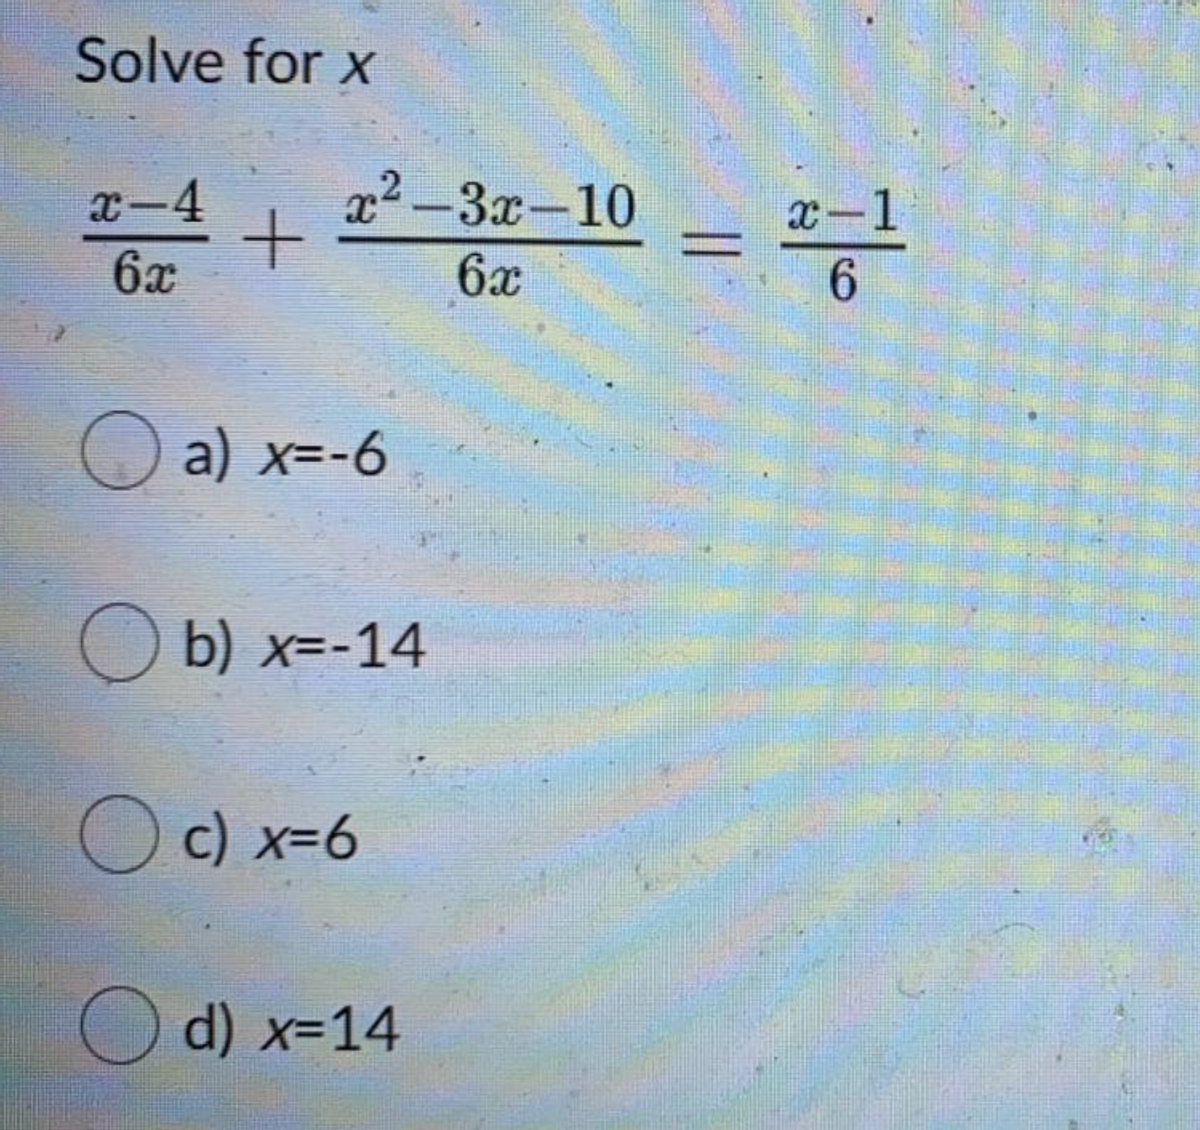 Solve for x
x2-3x-10
x-4
6x
x-1
6.
6x
O a) x=-6
O b) x=-14
O c) x=6
O d) x=14
